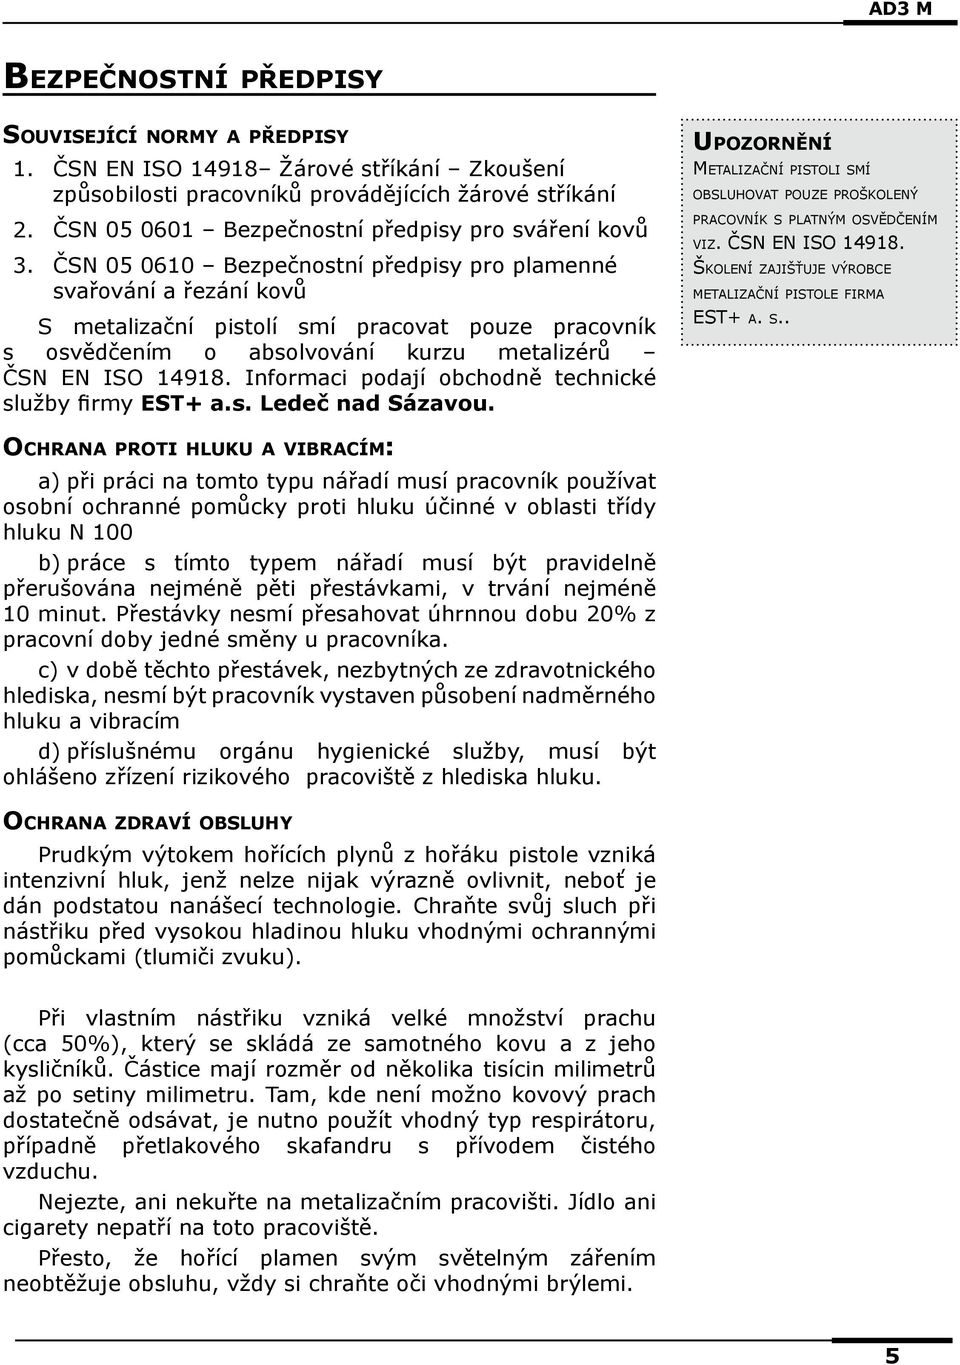 kurzu metalizérů ČSN EN ISO 14918. Informaci podají obchodně technické služby firmy EST+ a.s. Ledeč nad Sázavou.